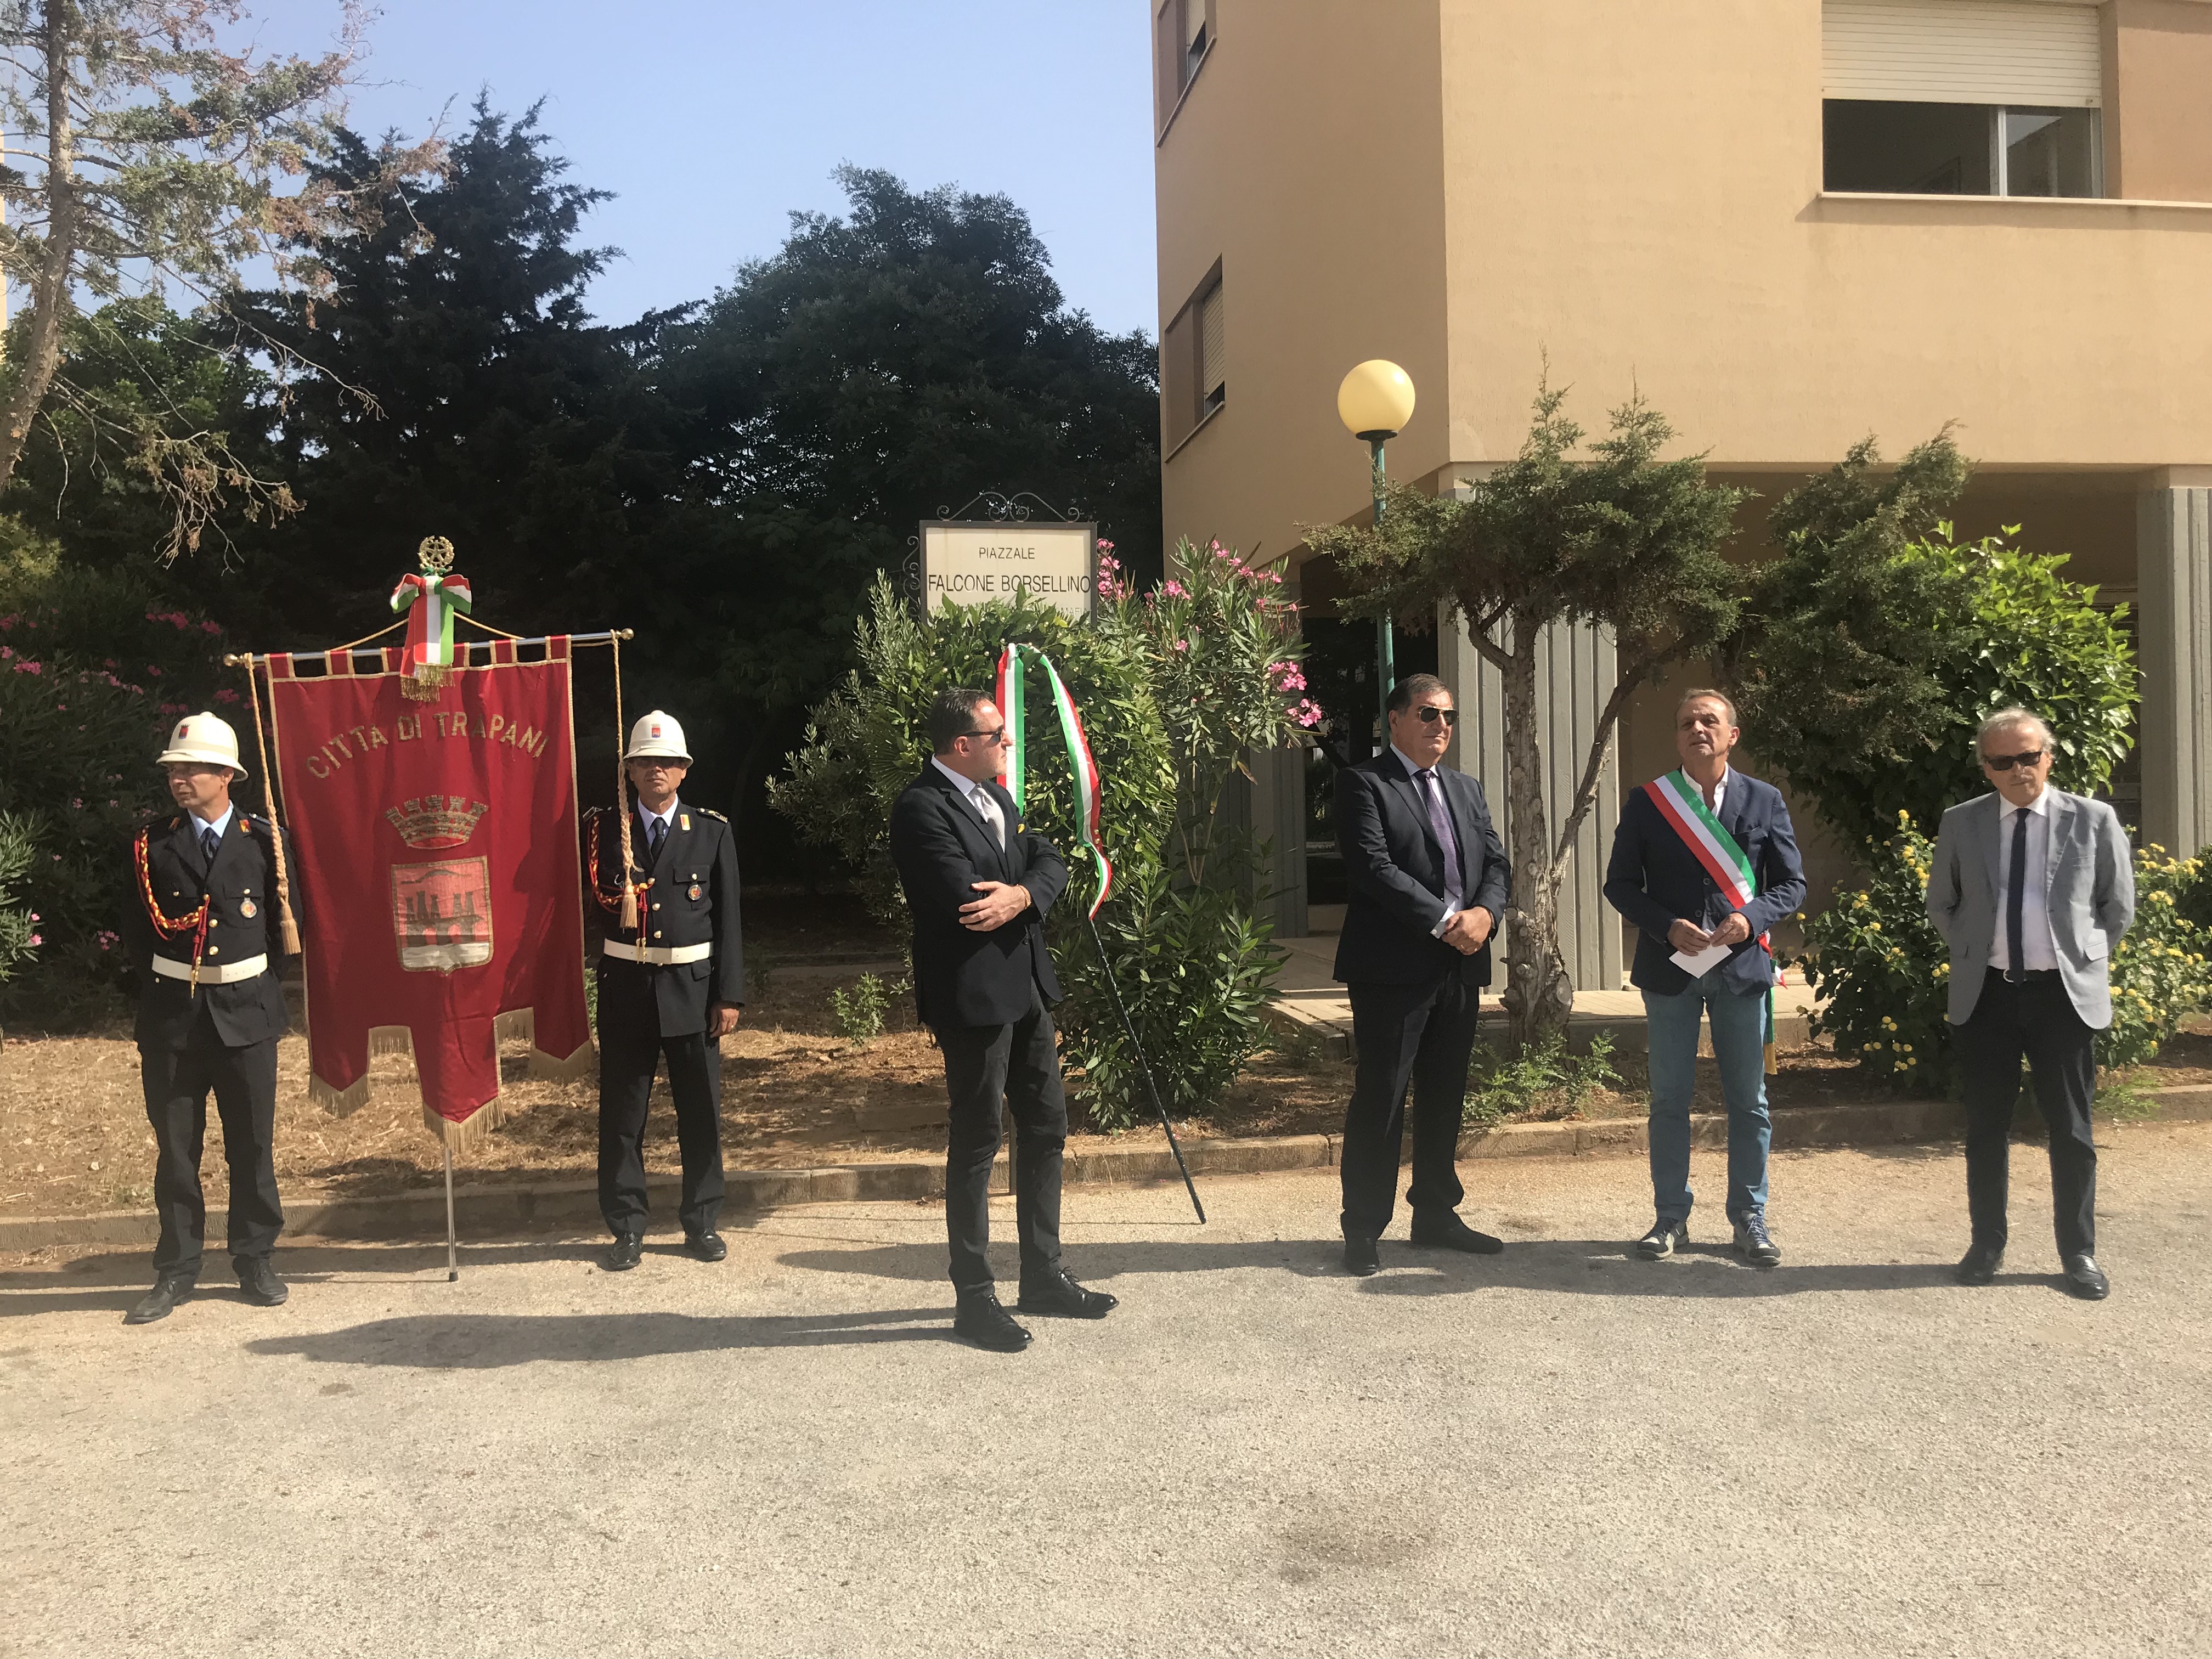 Anniversario della strage via D’Amelio: cerimonia commemorativa a Trapani